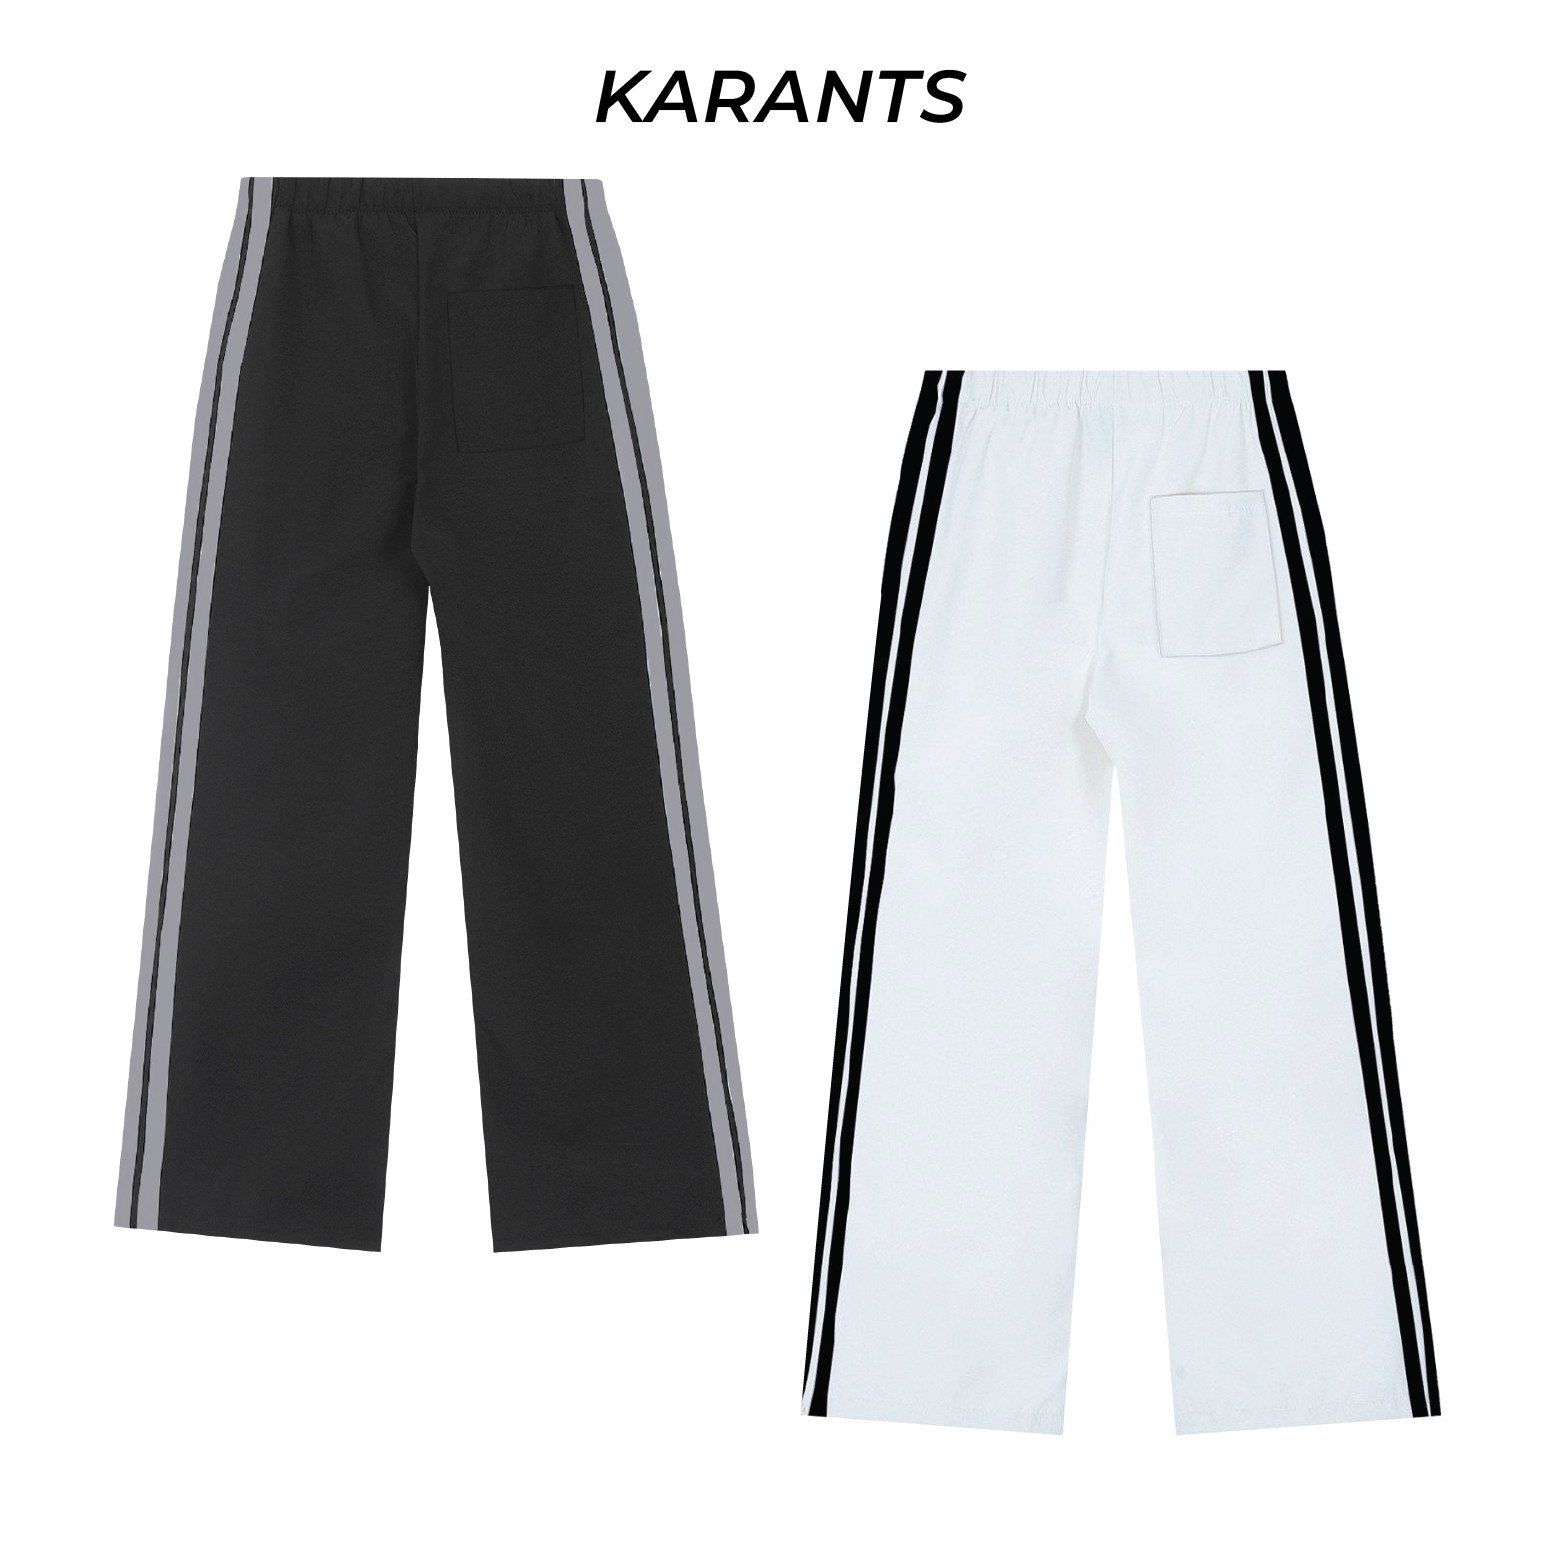  Quần Dù Ống Rộng Thể Thao Phối Sọc Karants Local Brand Streetwear Hot Trend - KQ09 